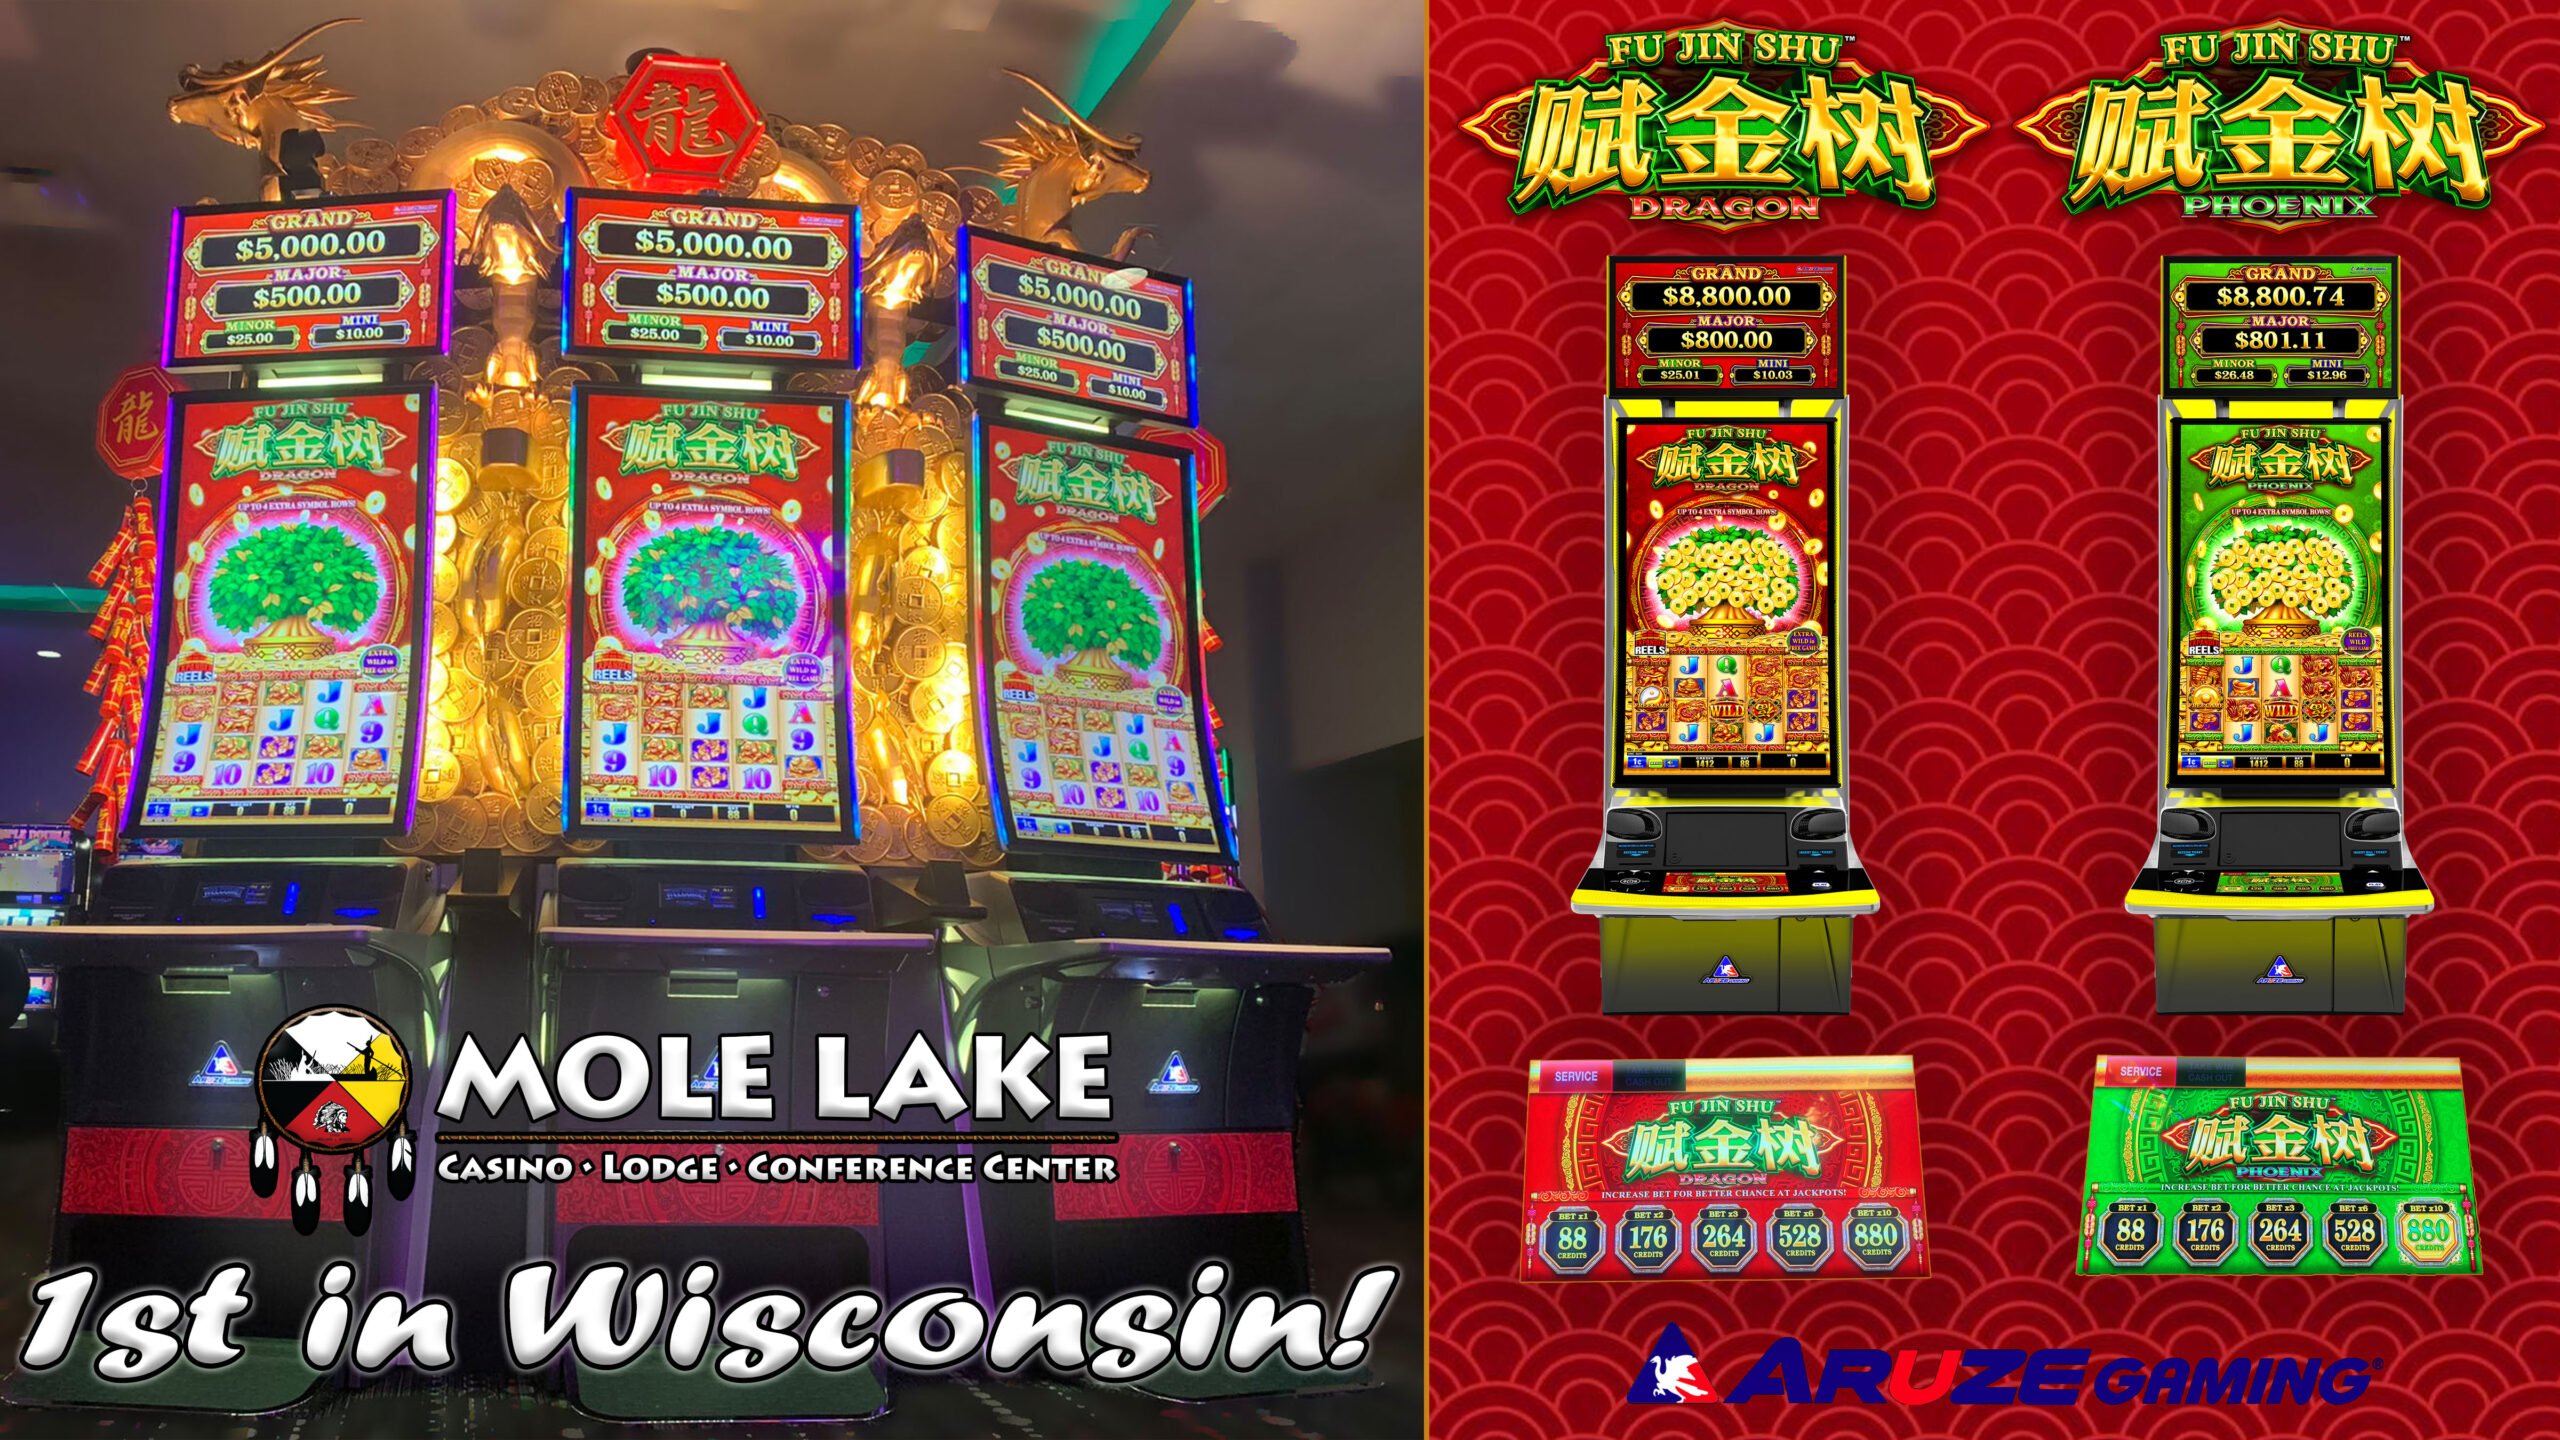 Mole Lake Casino In Crandon Wisconsin Is The First Casino In Wisconsin To Get Fu-Jin-Shu